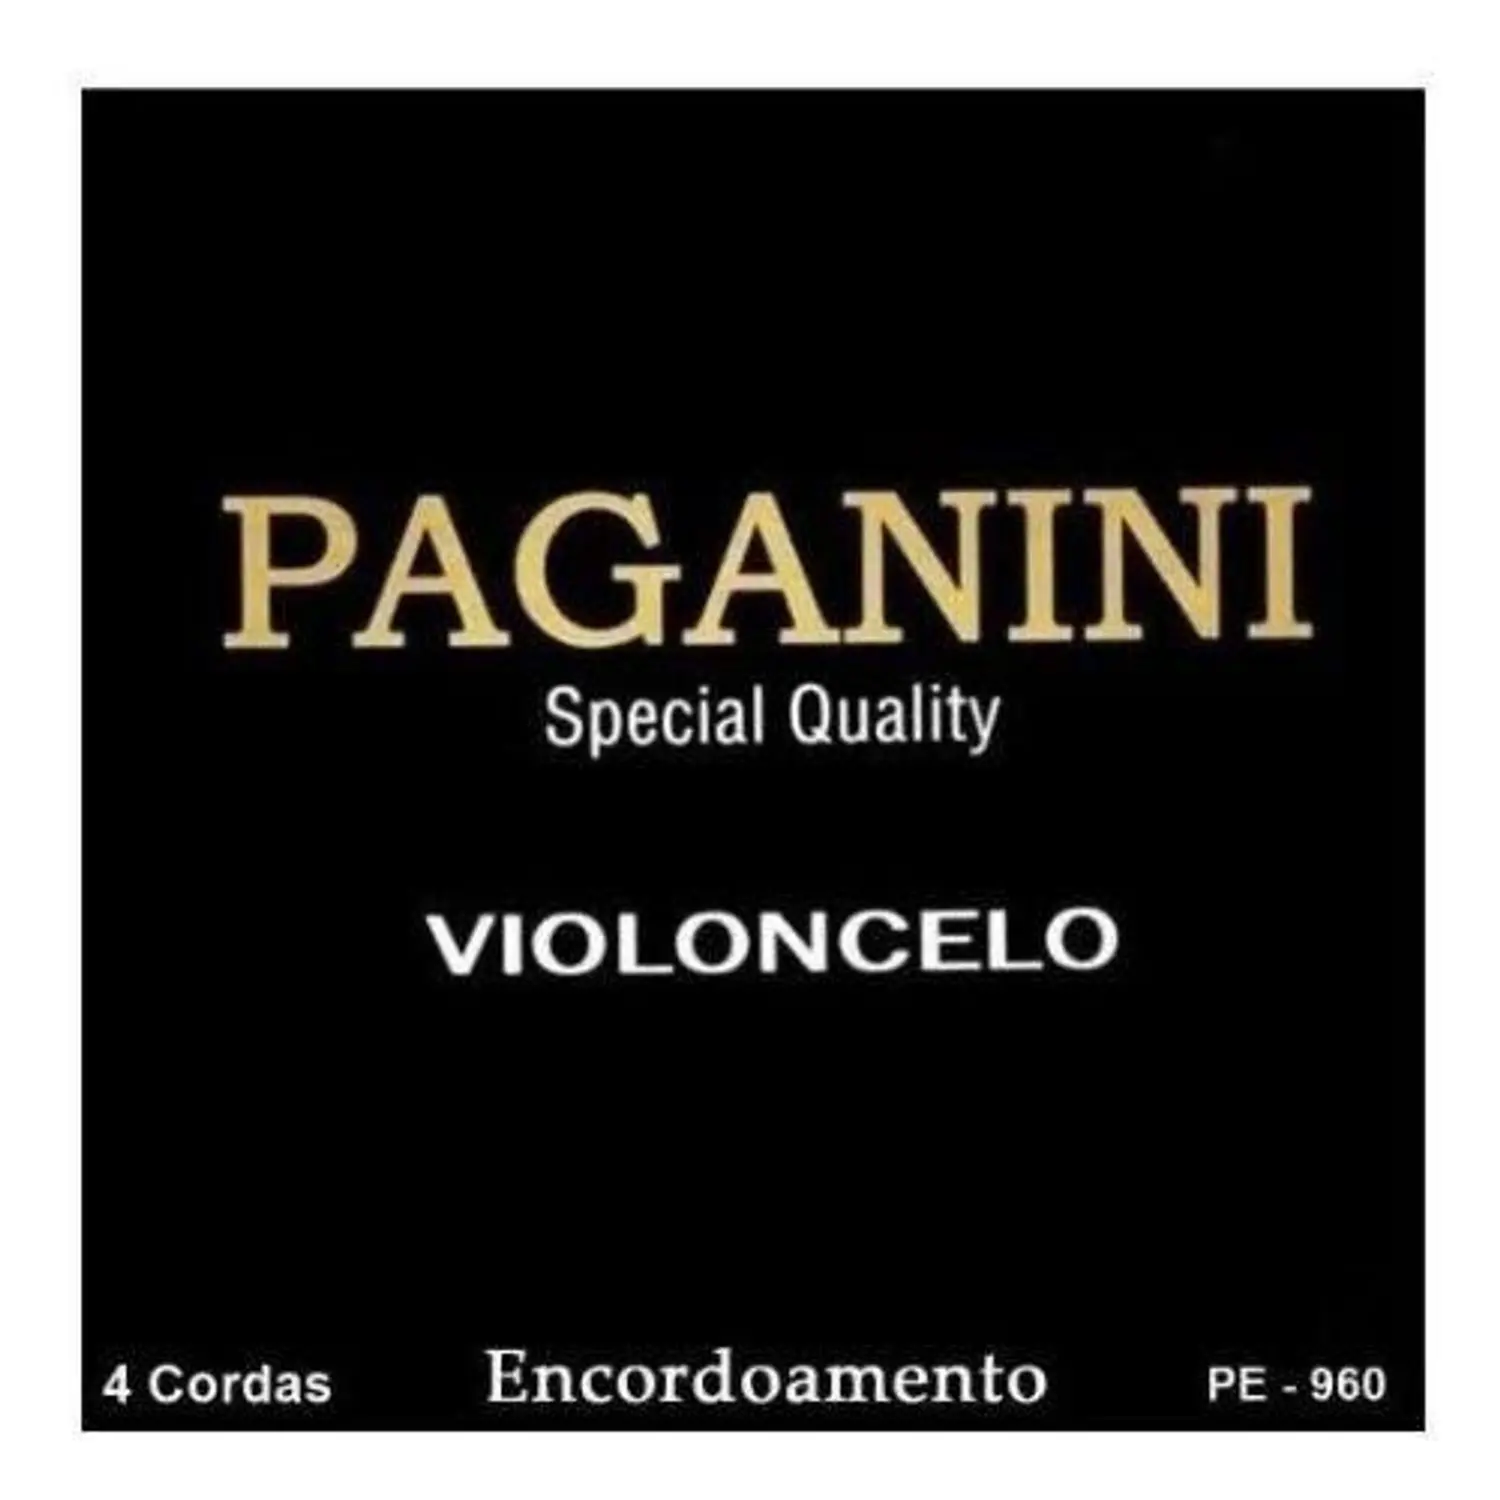 Encordoamento para Violoncello PAGANNINI PE-960